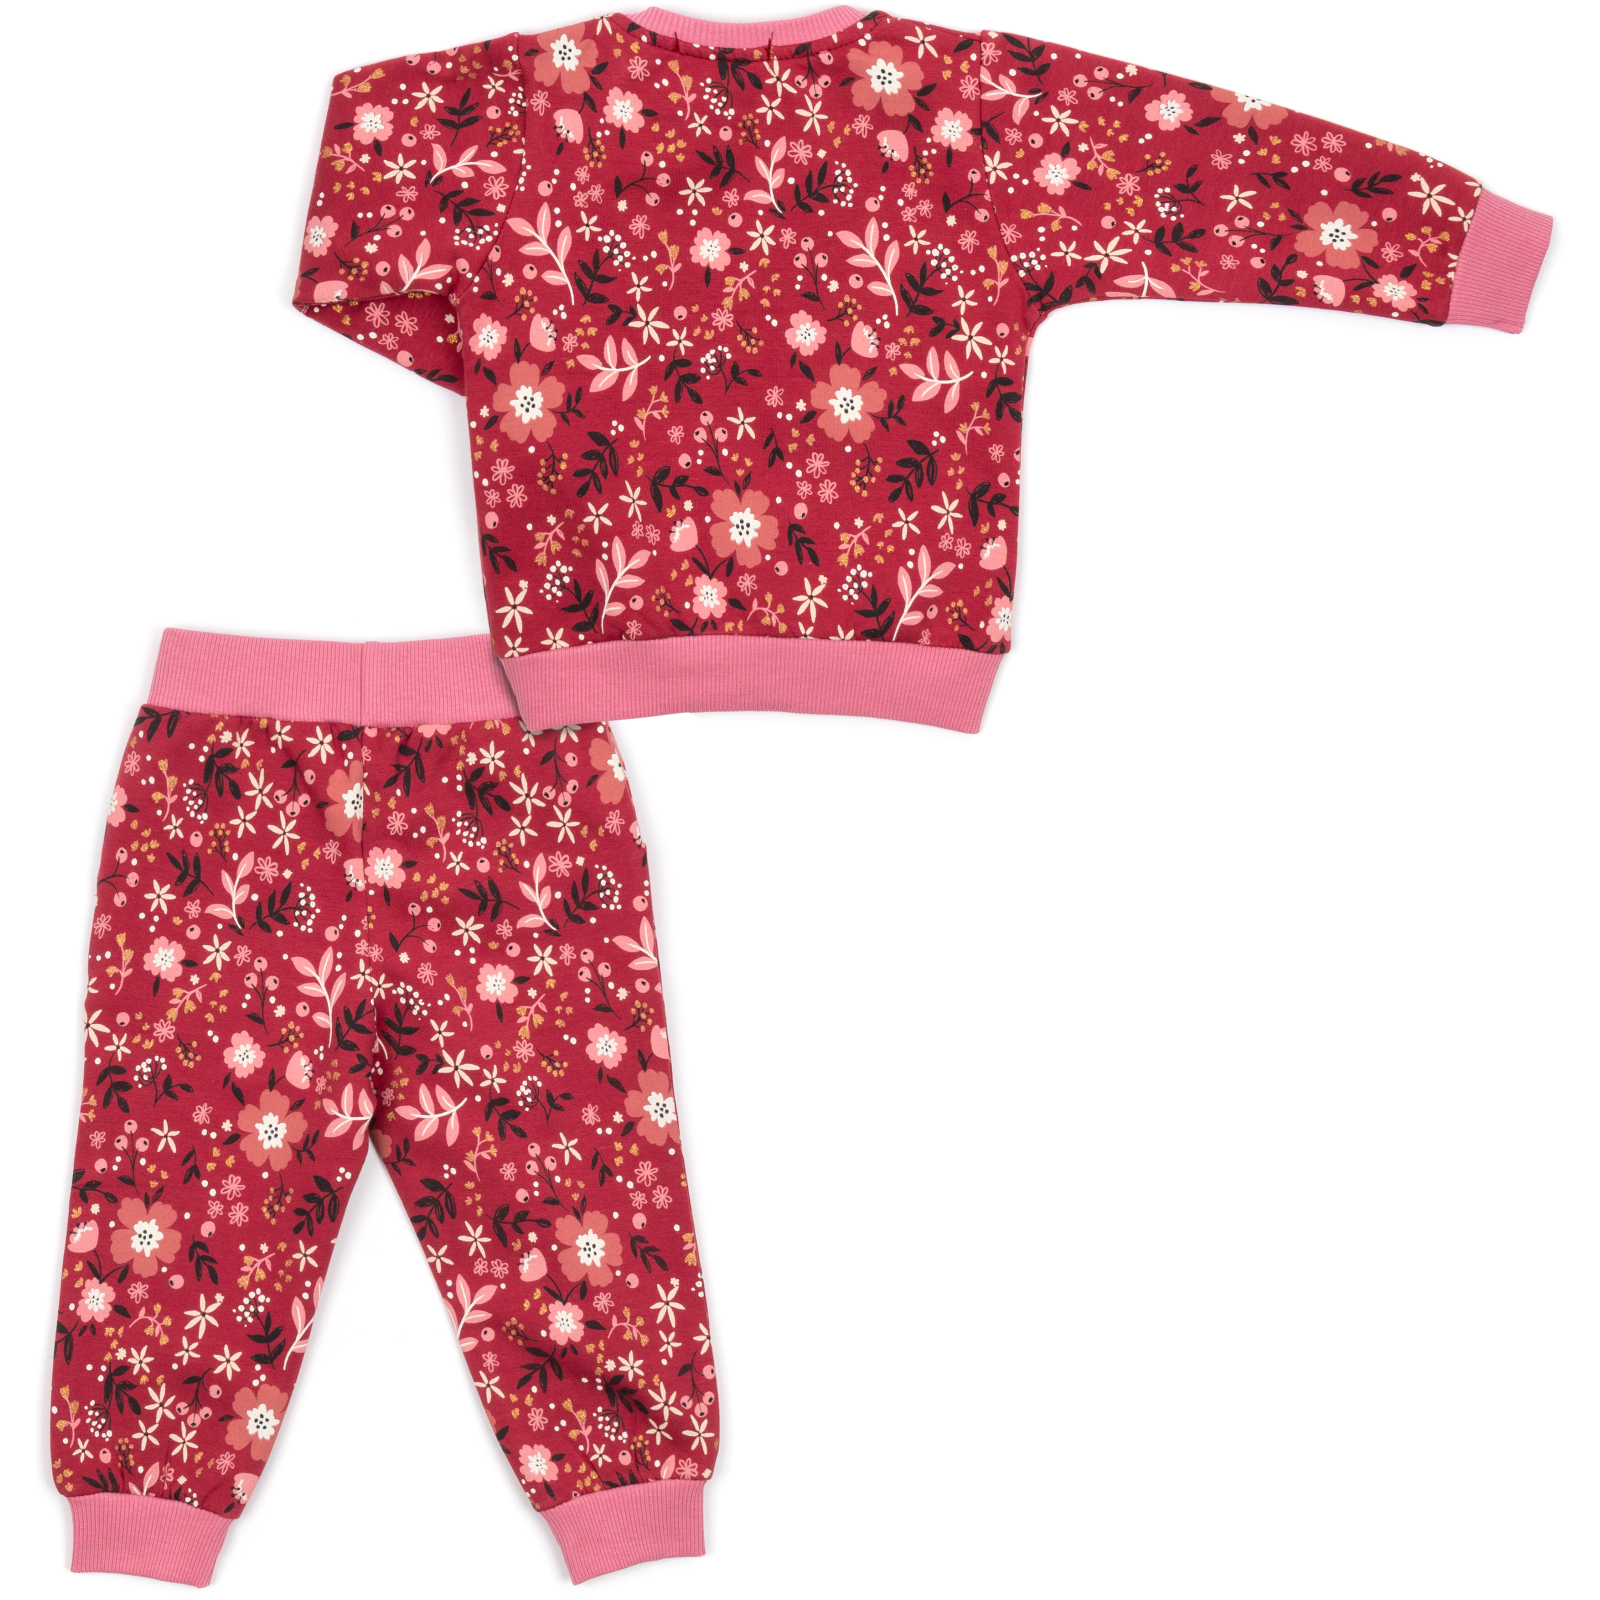 Набор детской одежды Breeze на флисе (17306-104G-red) изображение 4